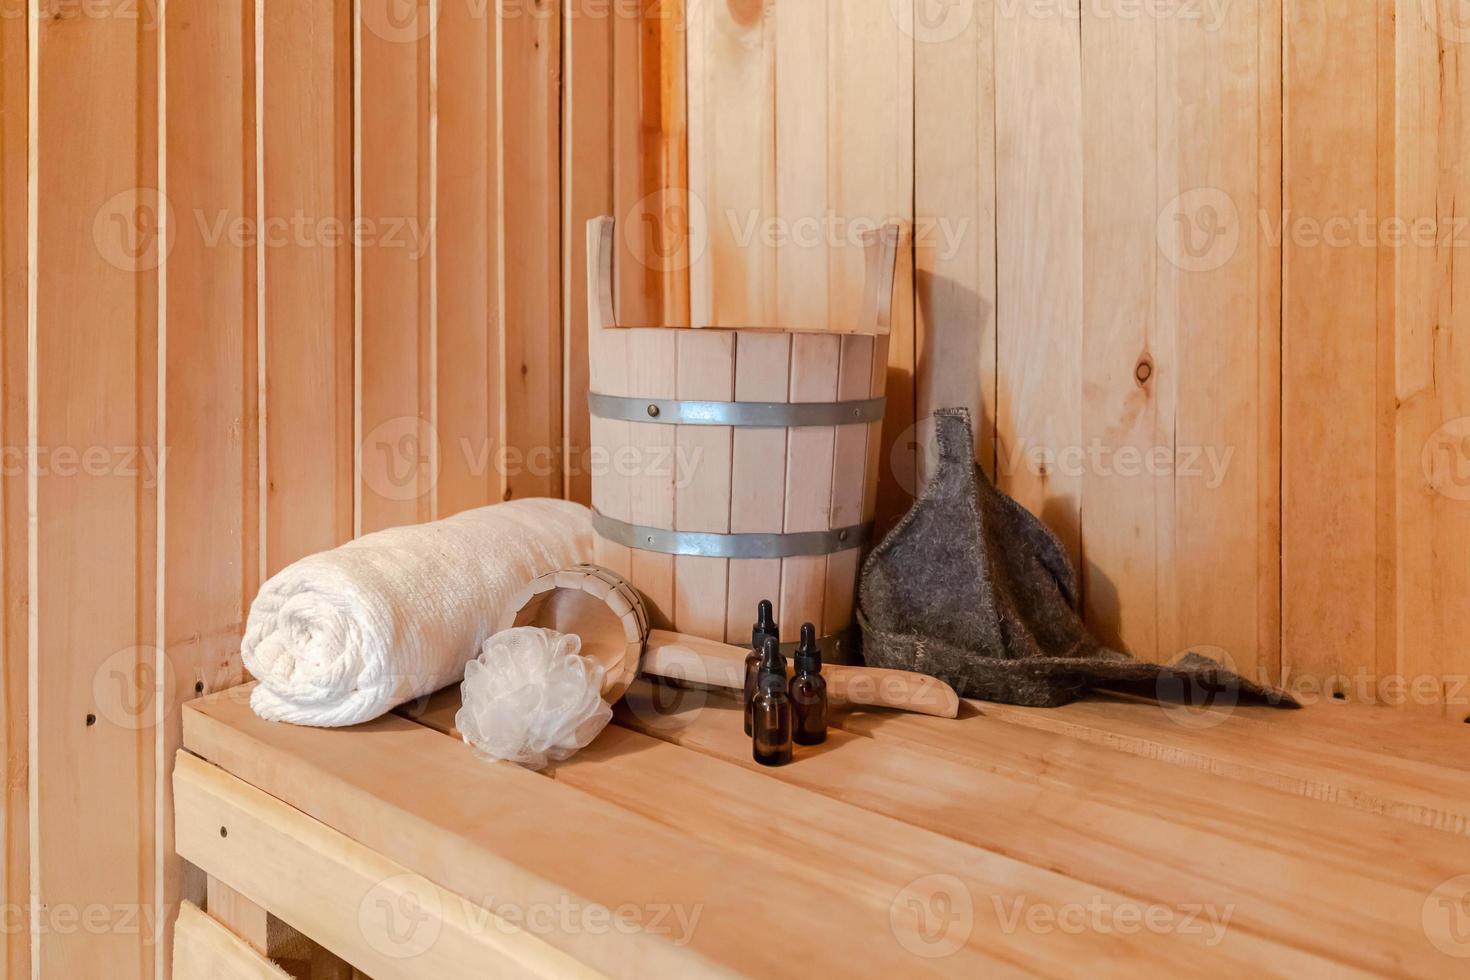 conceito de spa de balneário russo antigo tradicional. detalhes do interior sauna finlandesa sauna a vapor com acessórios de sauna tradicional conjunto toalha de bacia aroma óleo colher feltro. relaxe o conceito de banho da vila do país. foto